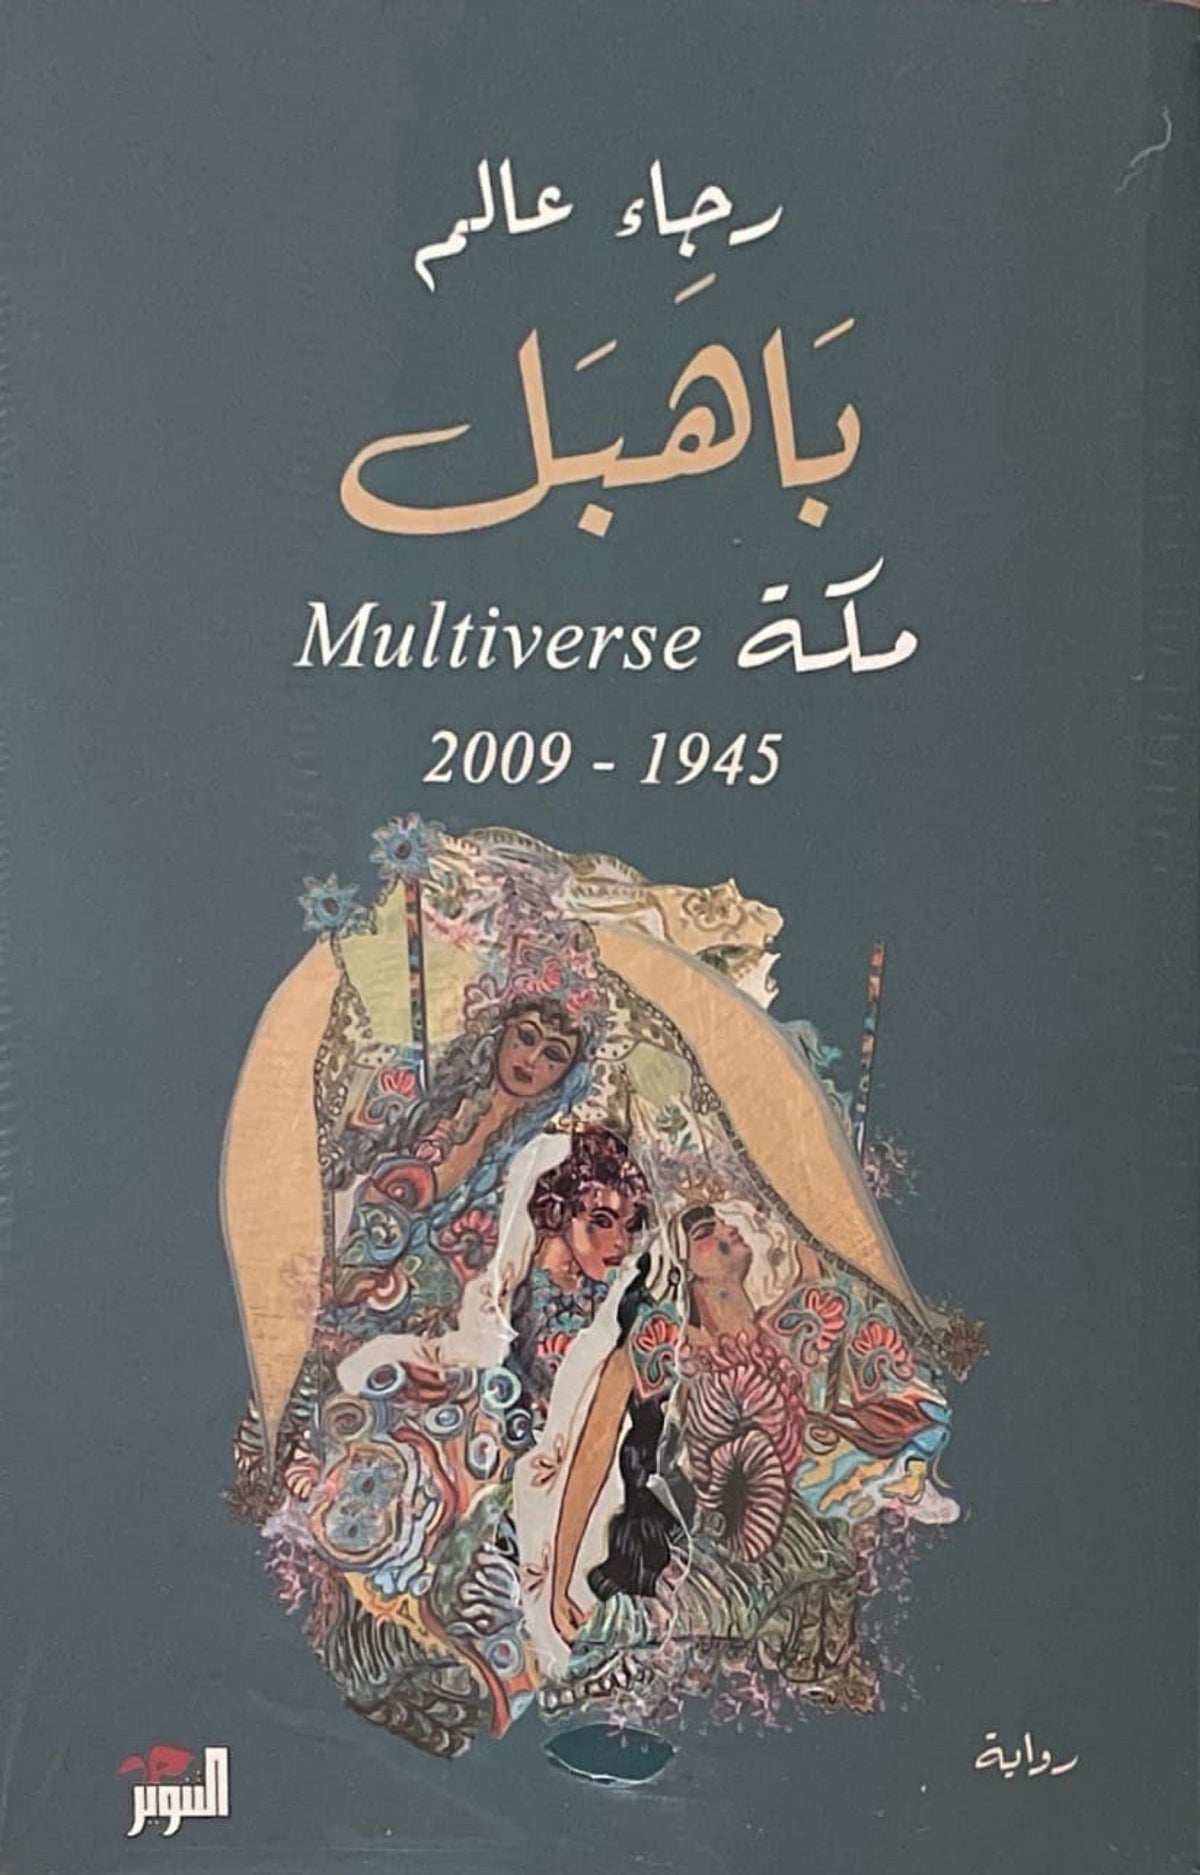 باهبل : مكة Multiverse 1945-2009